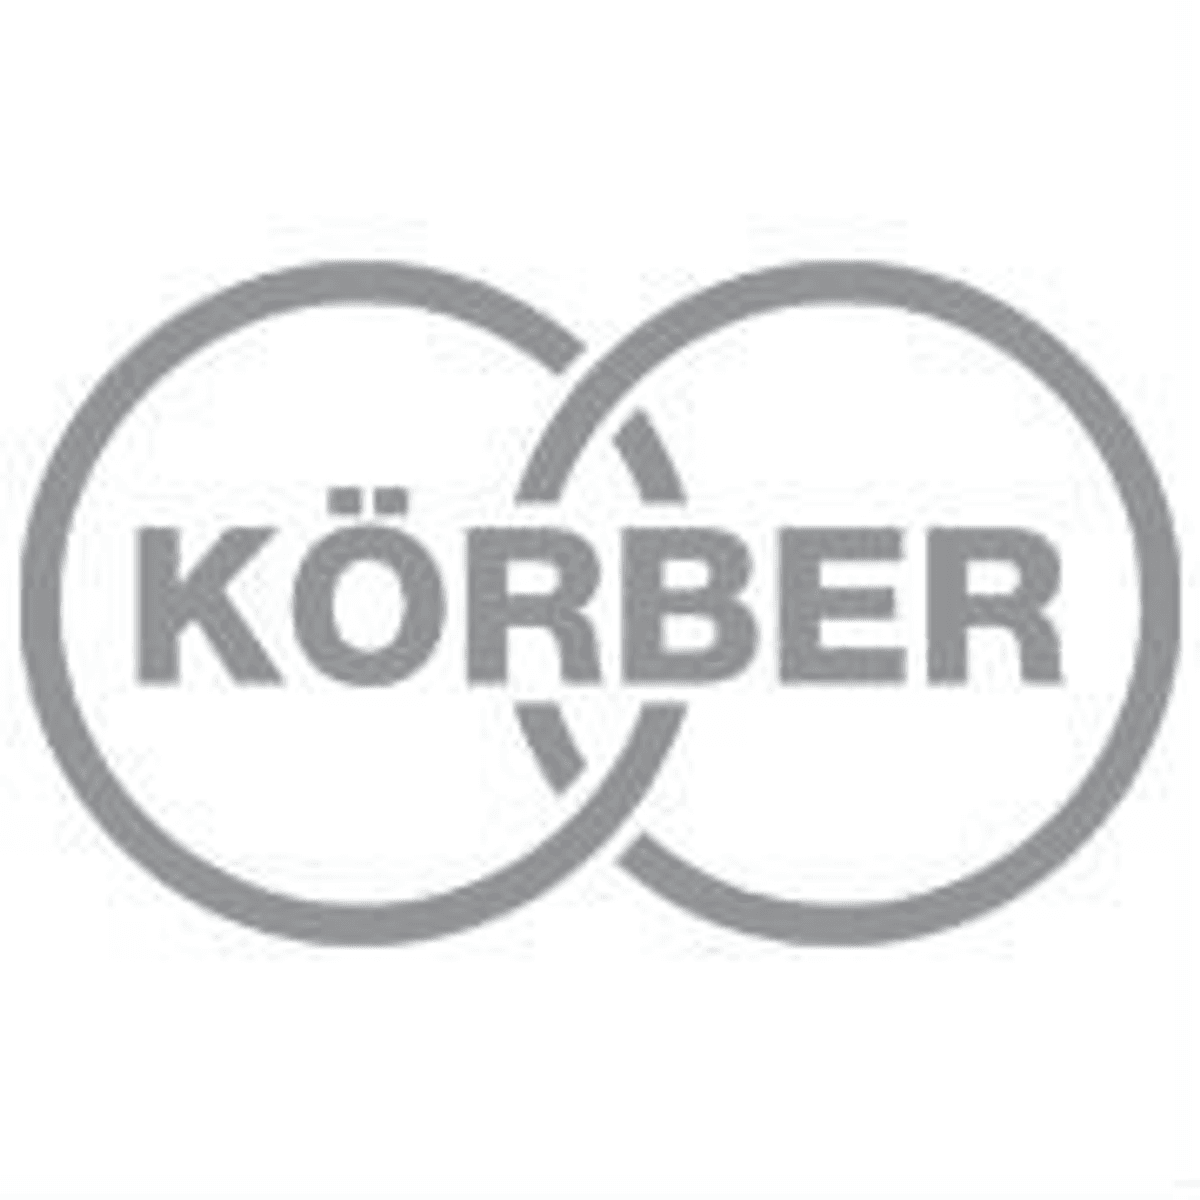 Veeloo Logistics is de nieuwe Benelux-partner van Körber image